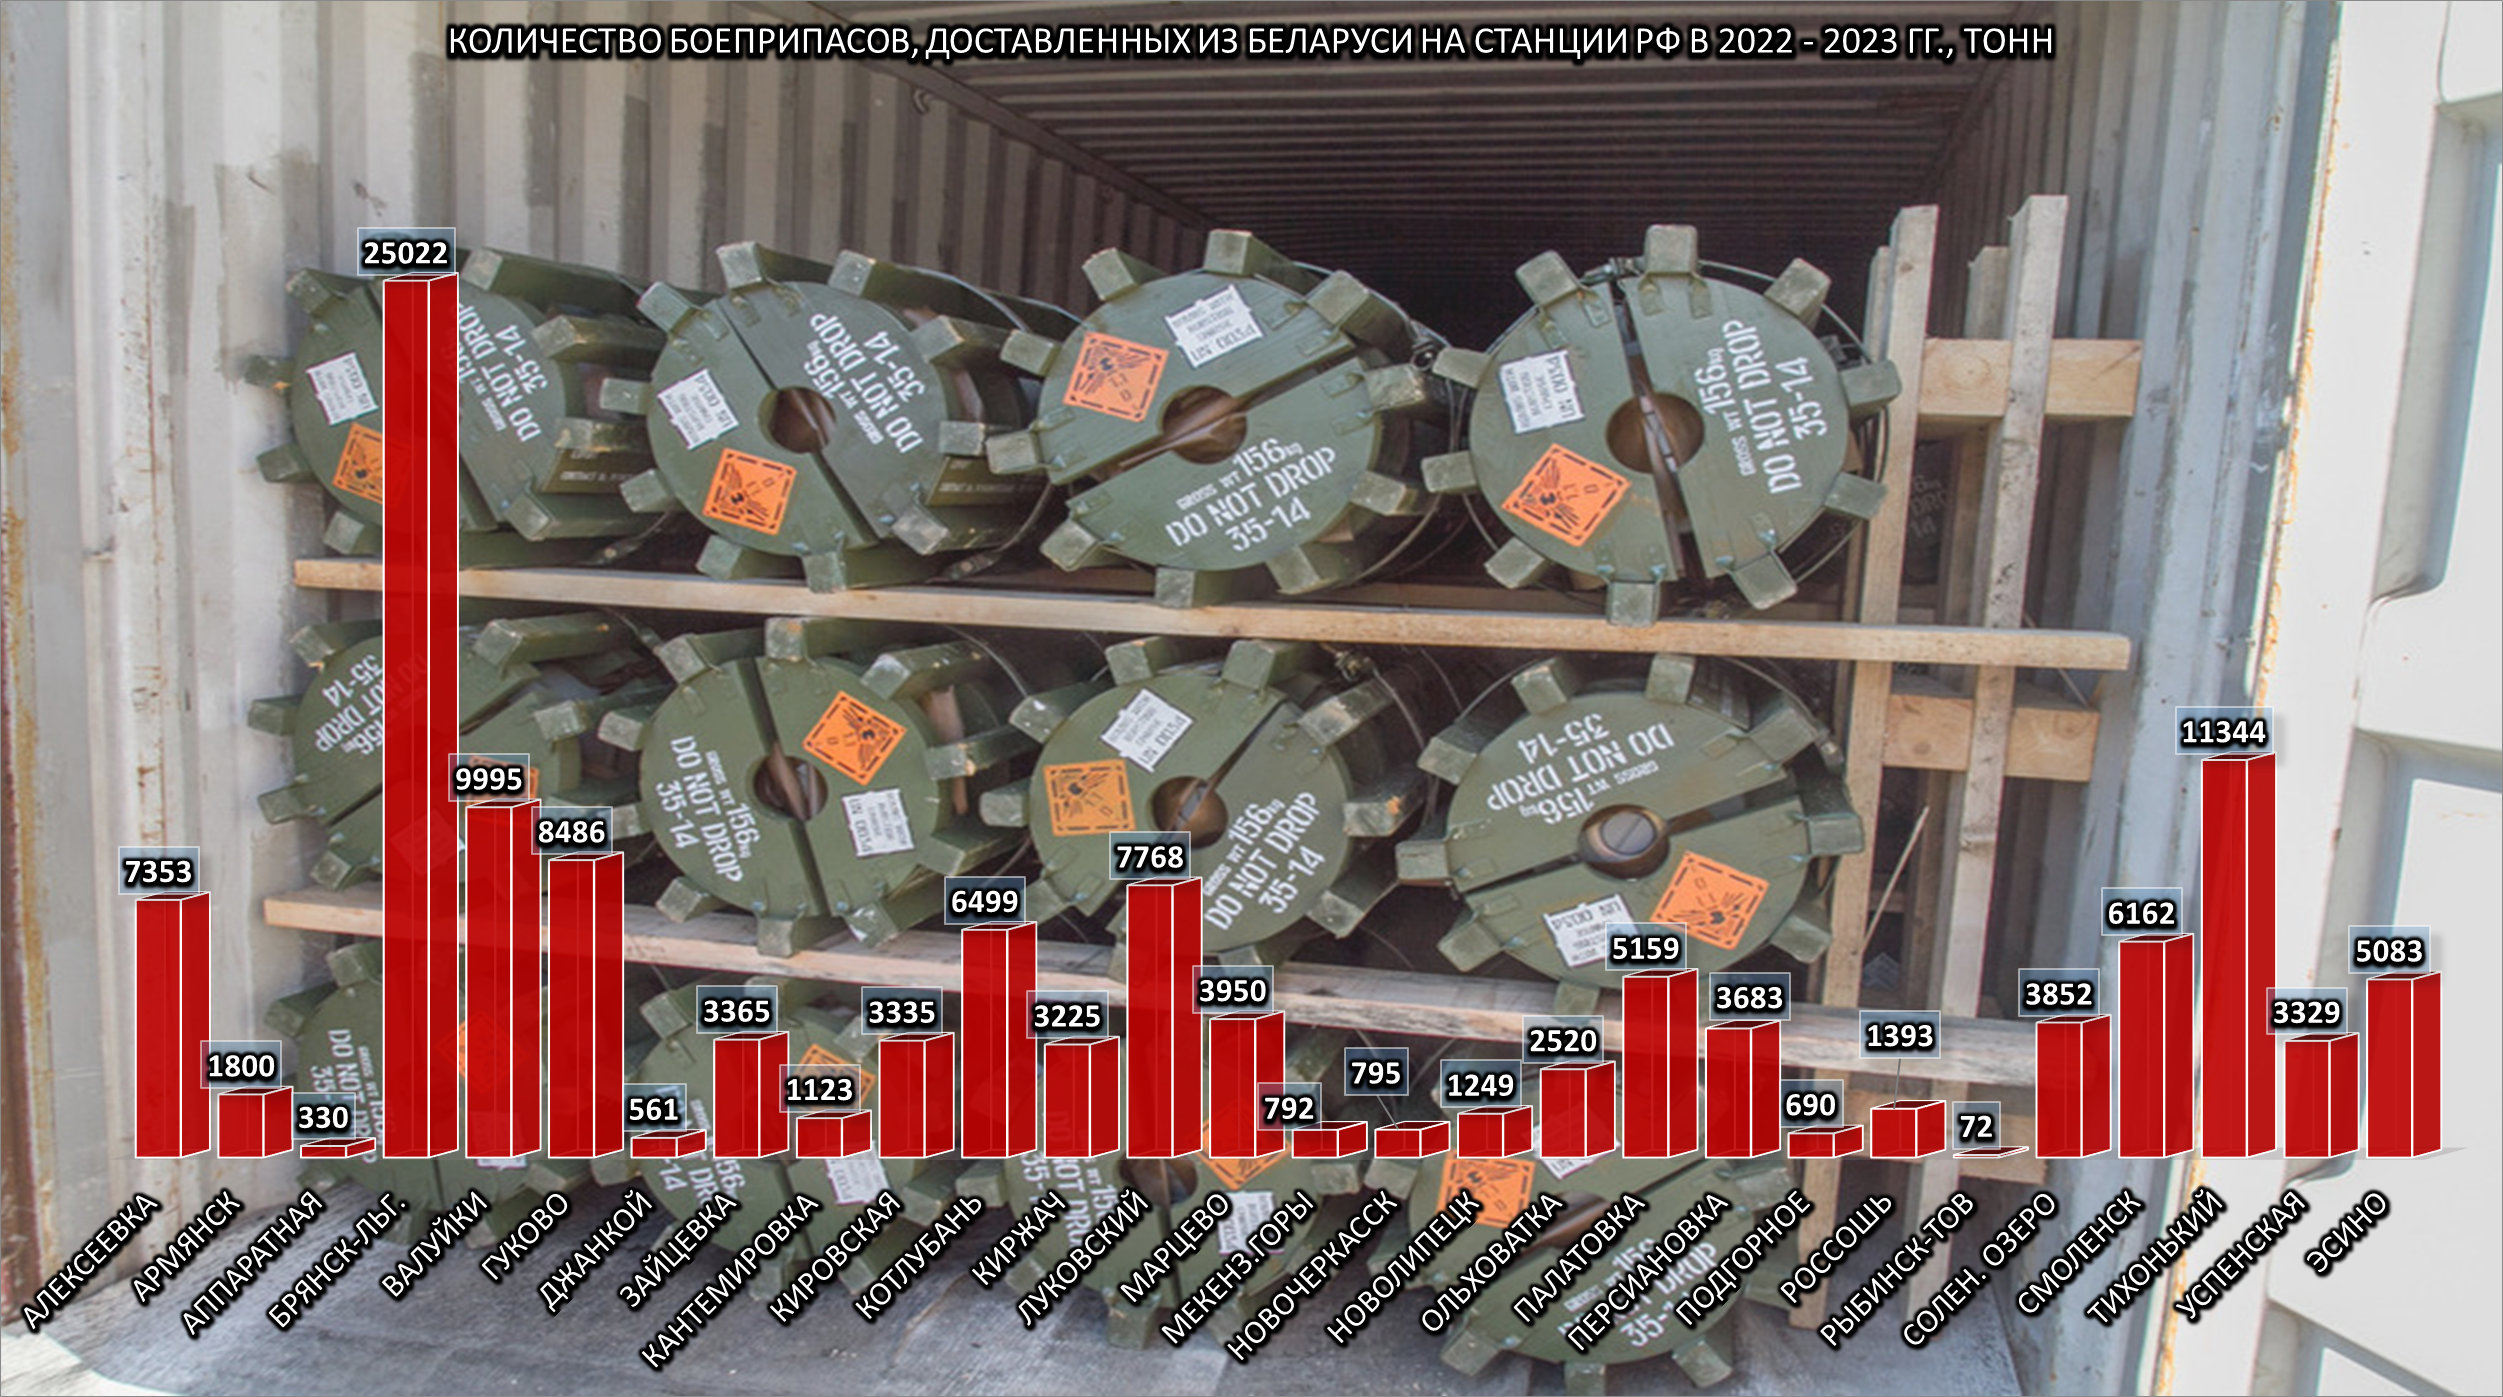 Количество боеприпасов, доставленных из Беларуси на станции РФ за 2022 и начало 2023 гг.